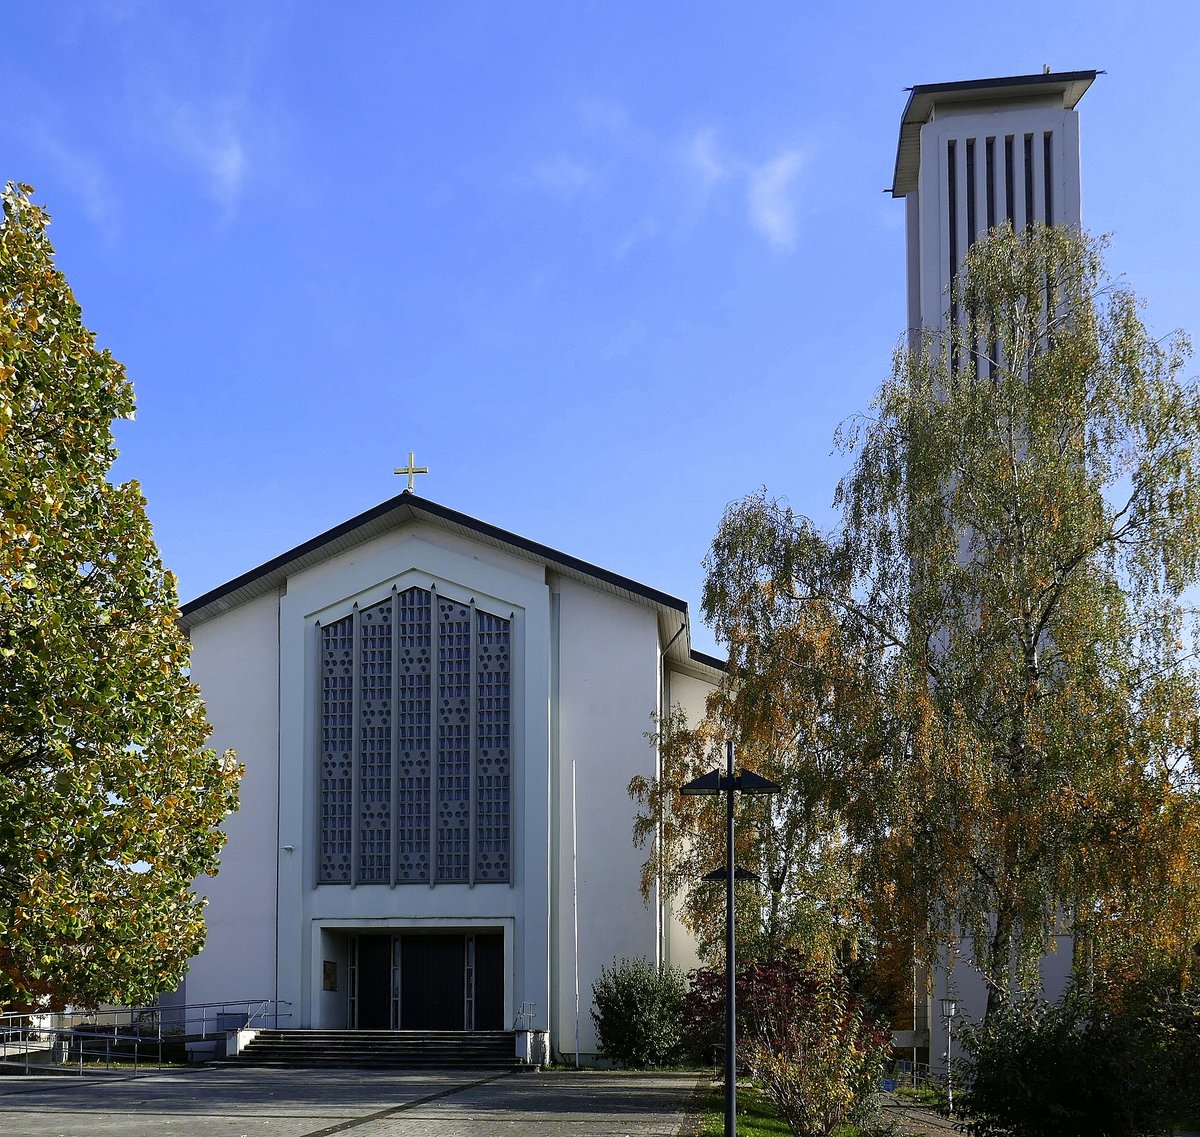 Friedlingen, die katholische Pfarrkirche Zum Guten Hirten, erbaut 1955-57, rechts der freistehende Glockenturm, 35m hoch, Okt.2020